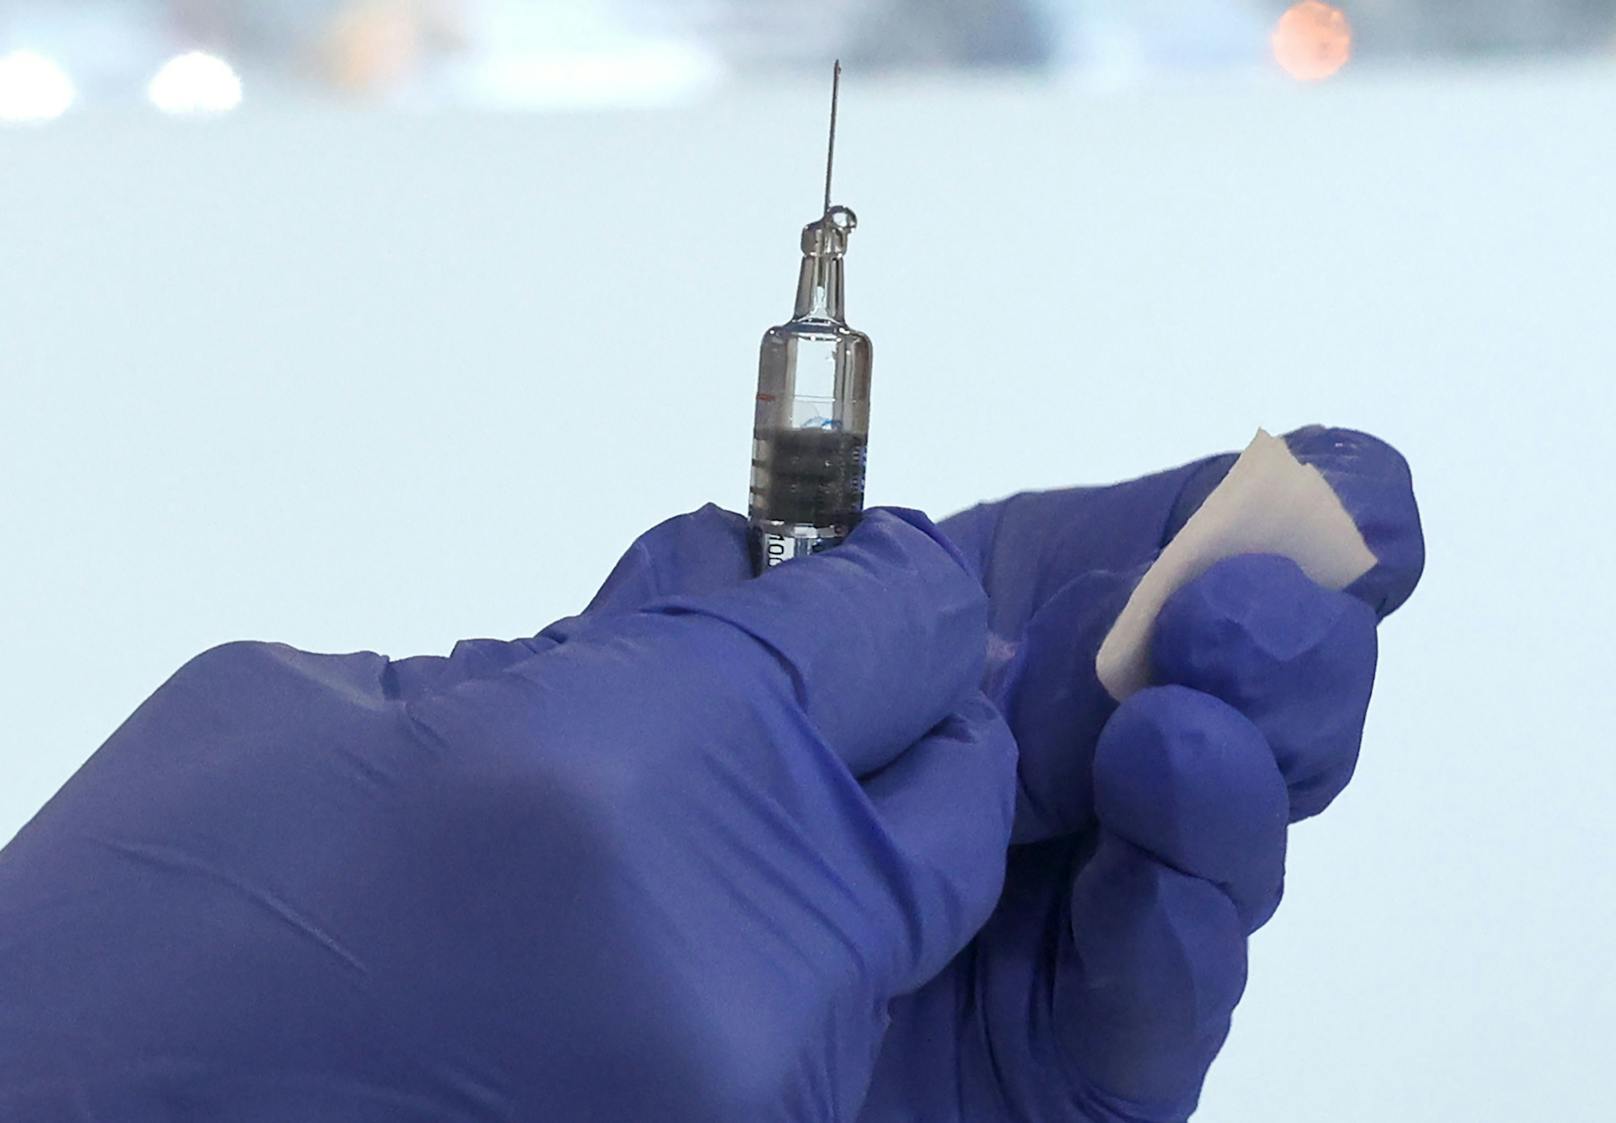 Ein Impfstoff gegen die Grippe auf Basis der mRNA-Technologie wird anhand einer klinischen Studie getestet. (Symbolbild)